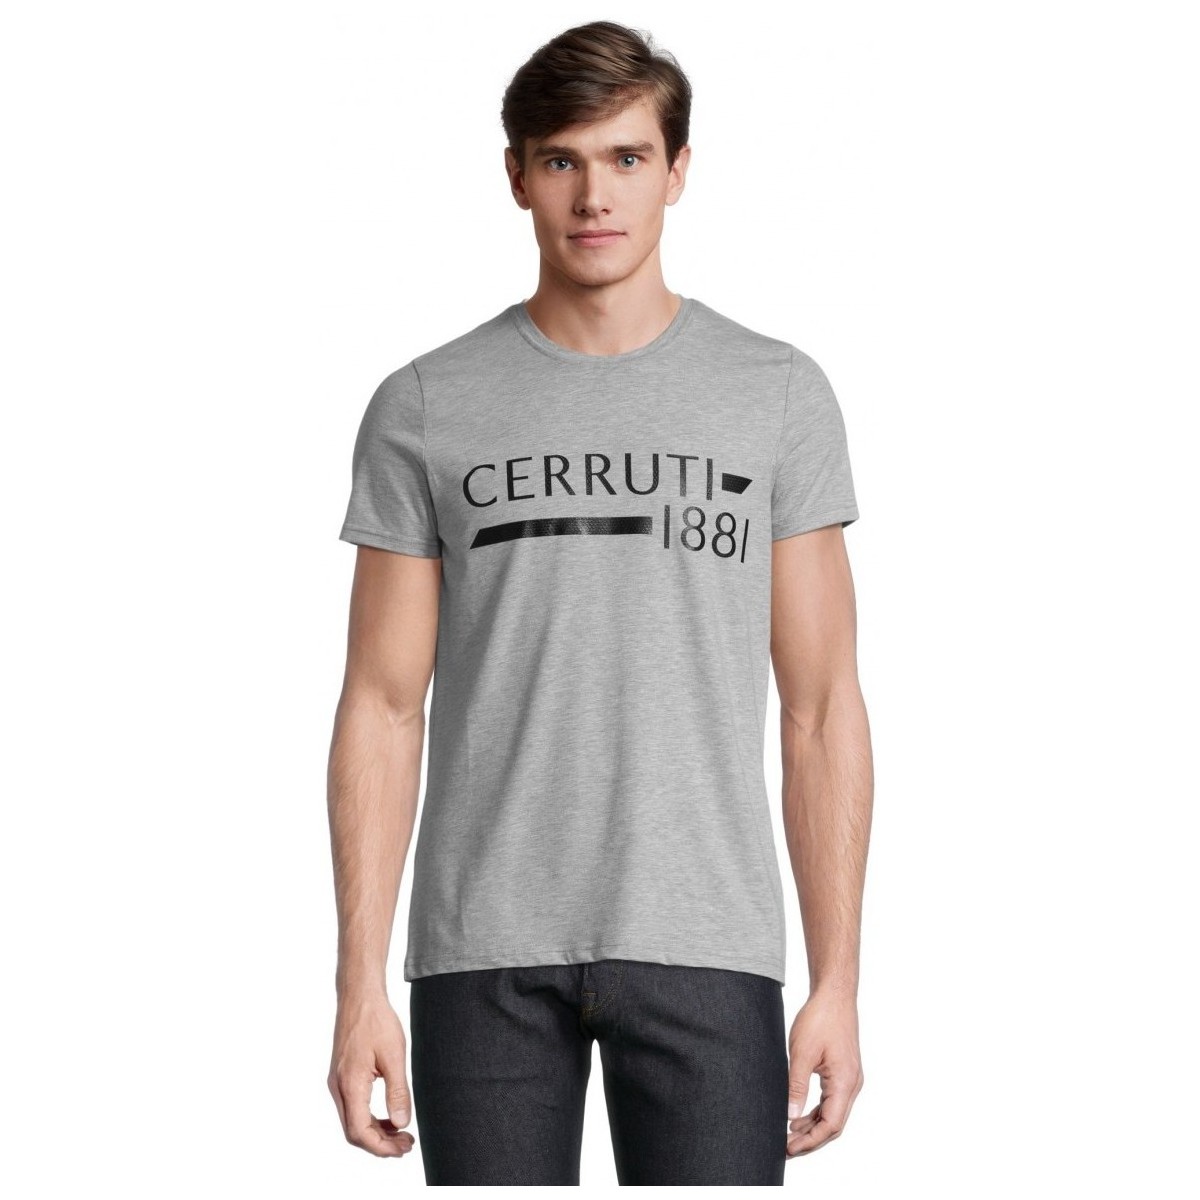 Vêtements Homme T-shirts manches courtes Cerruti 1881 Courseulles Gris